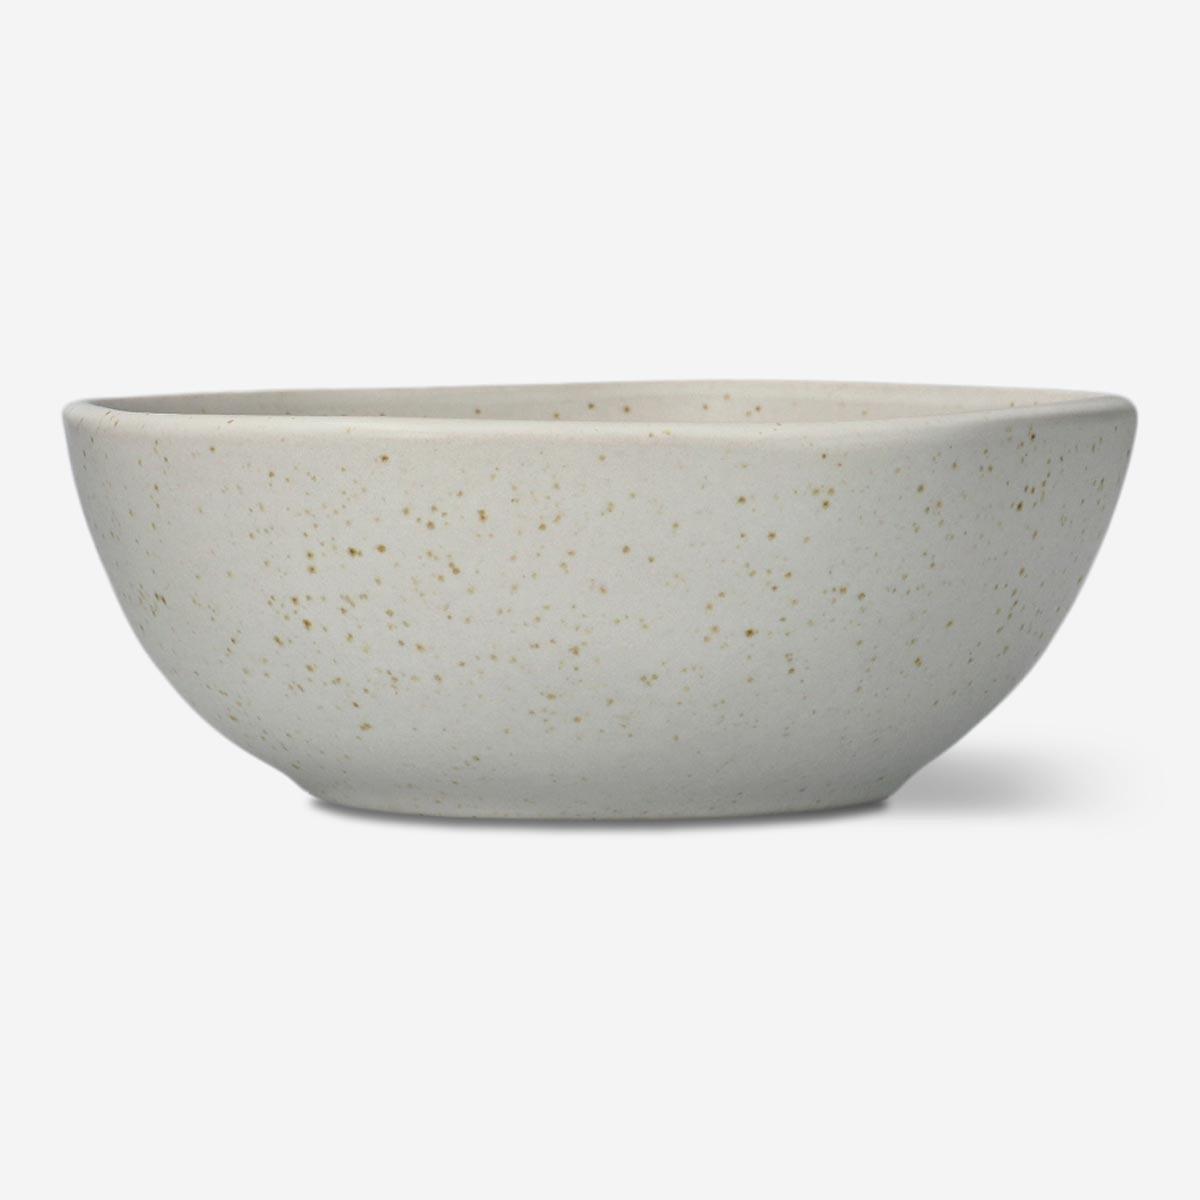 White stoneware Bowl